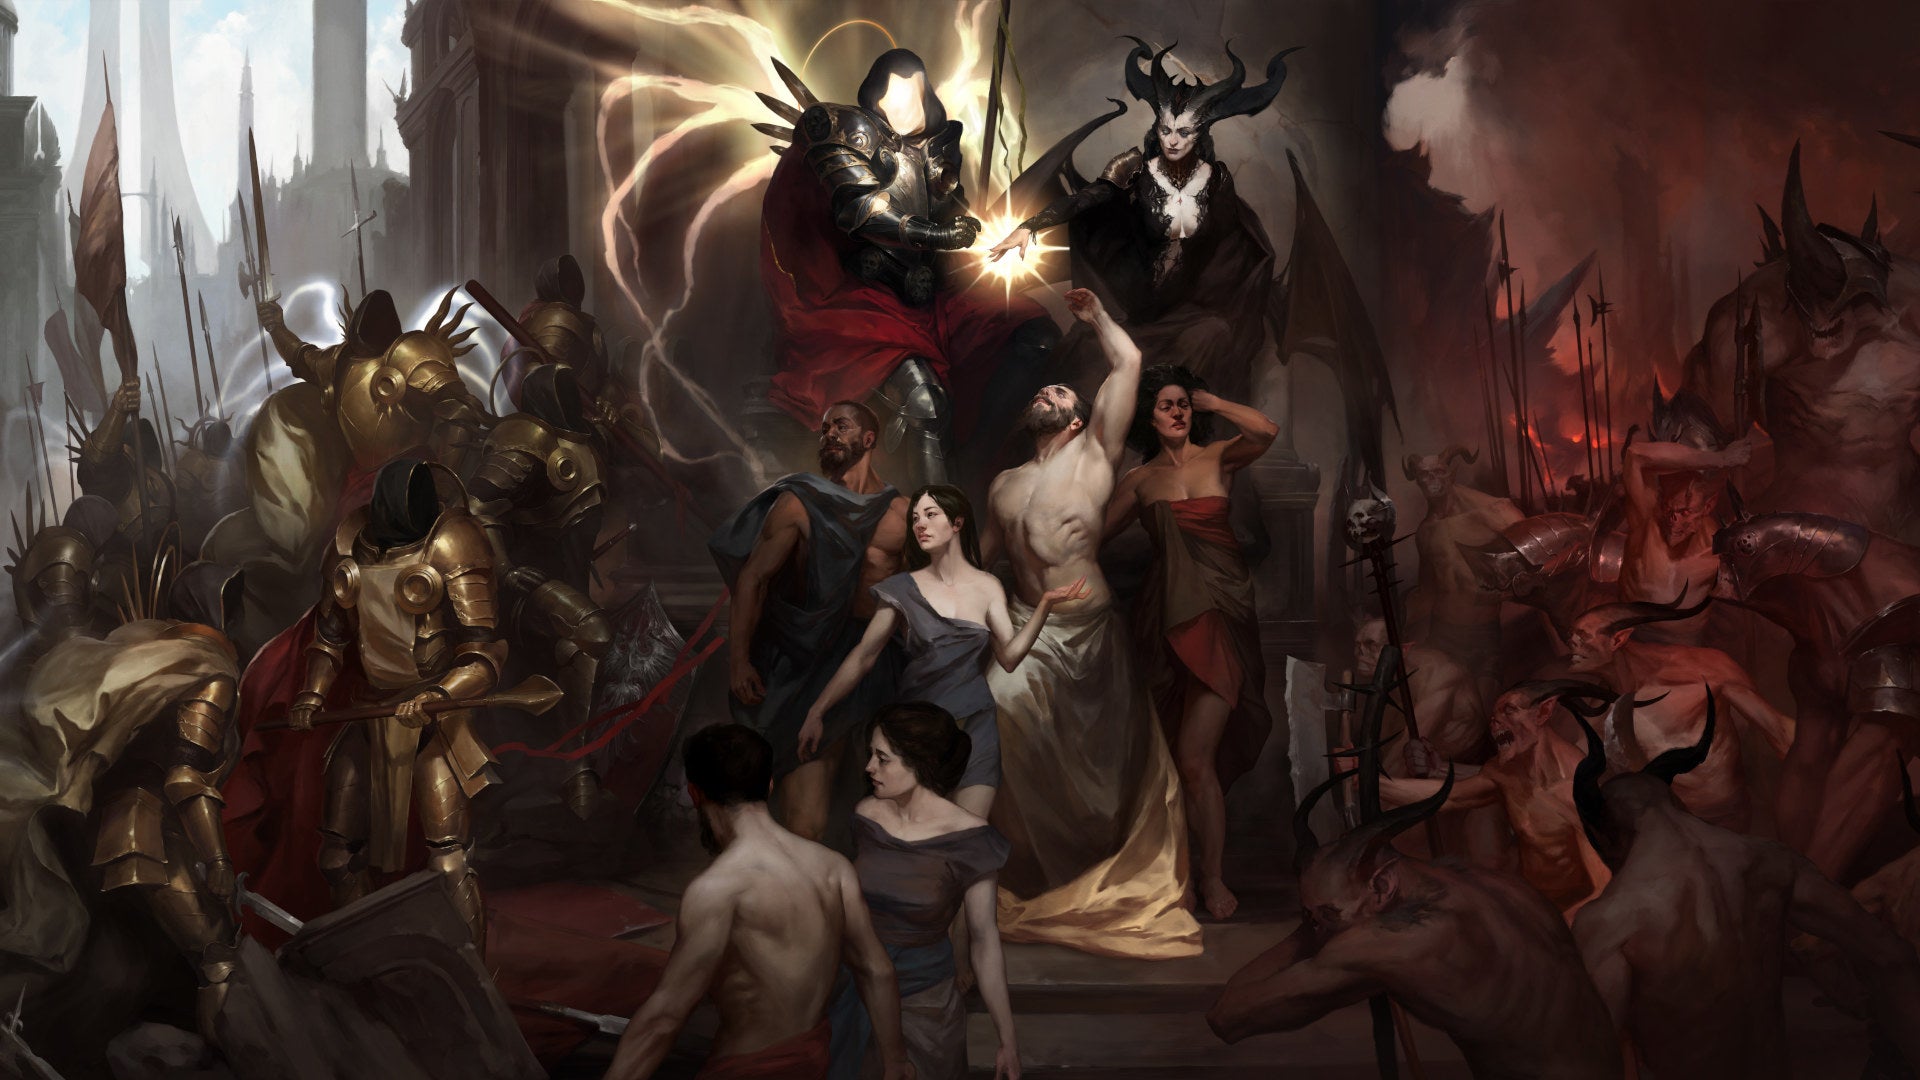 Концепт-Арт Diablo Iv, Изображающий Инария, Лилит И Их Силы.